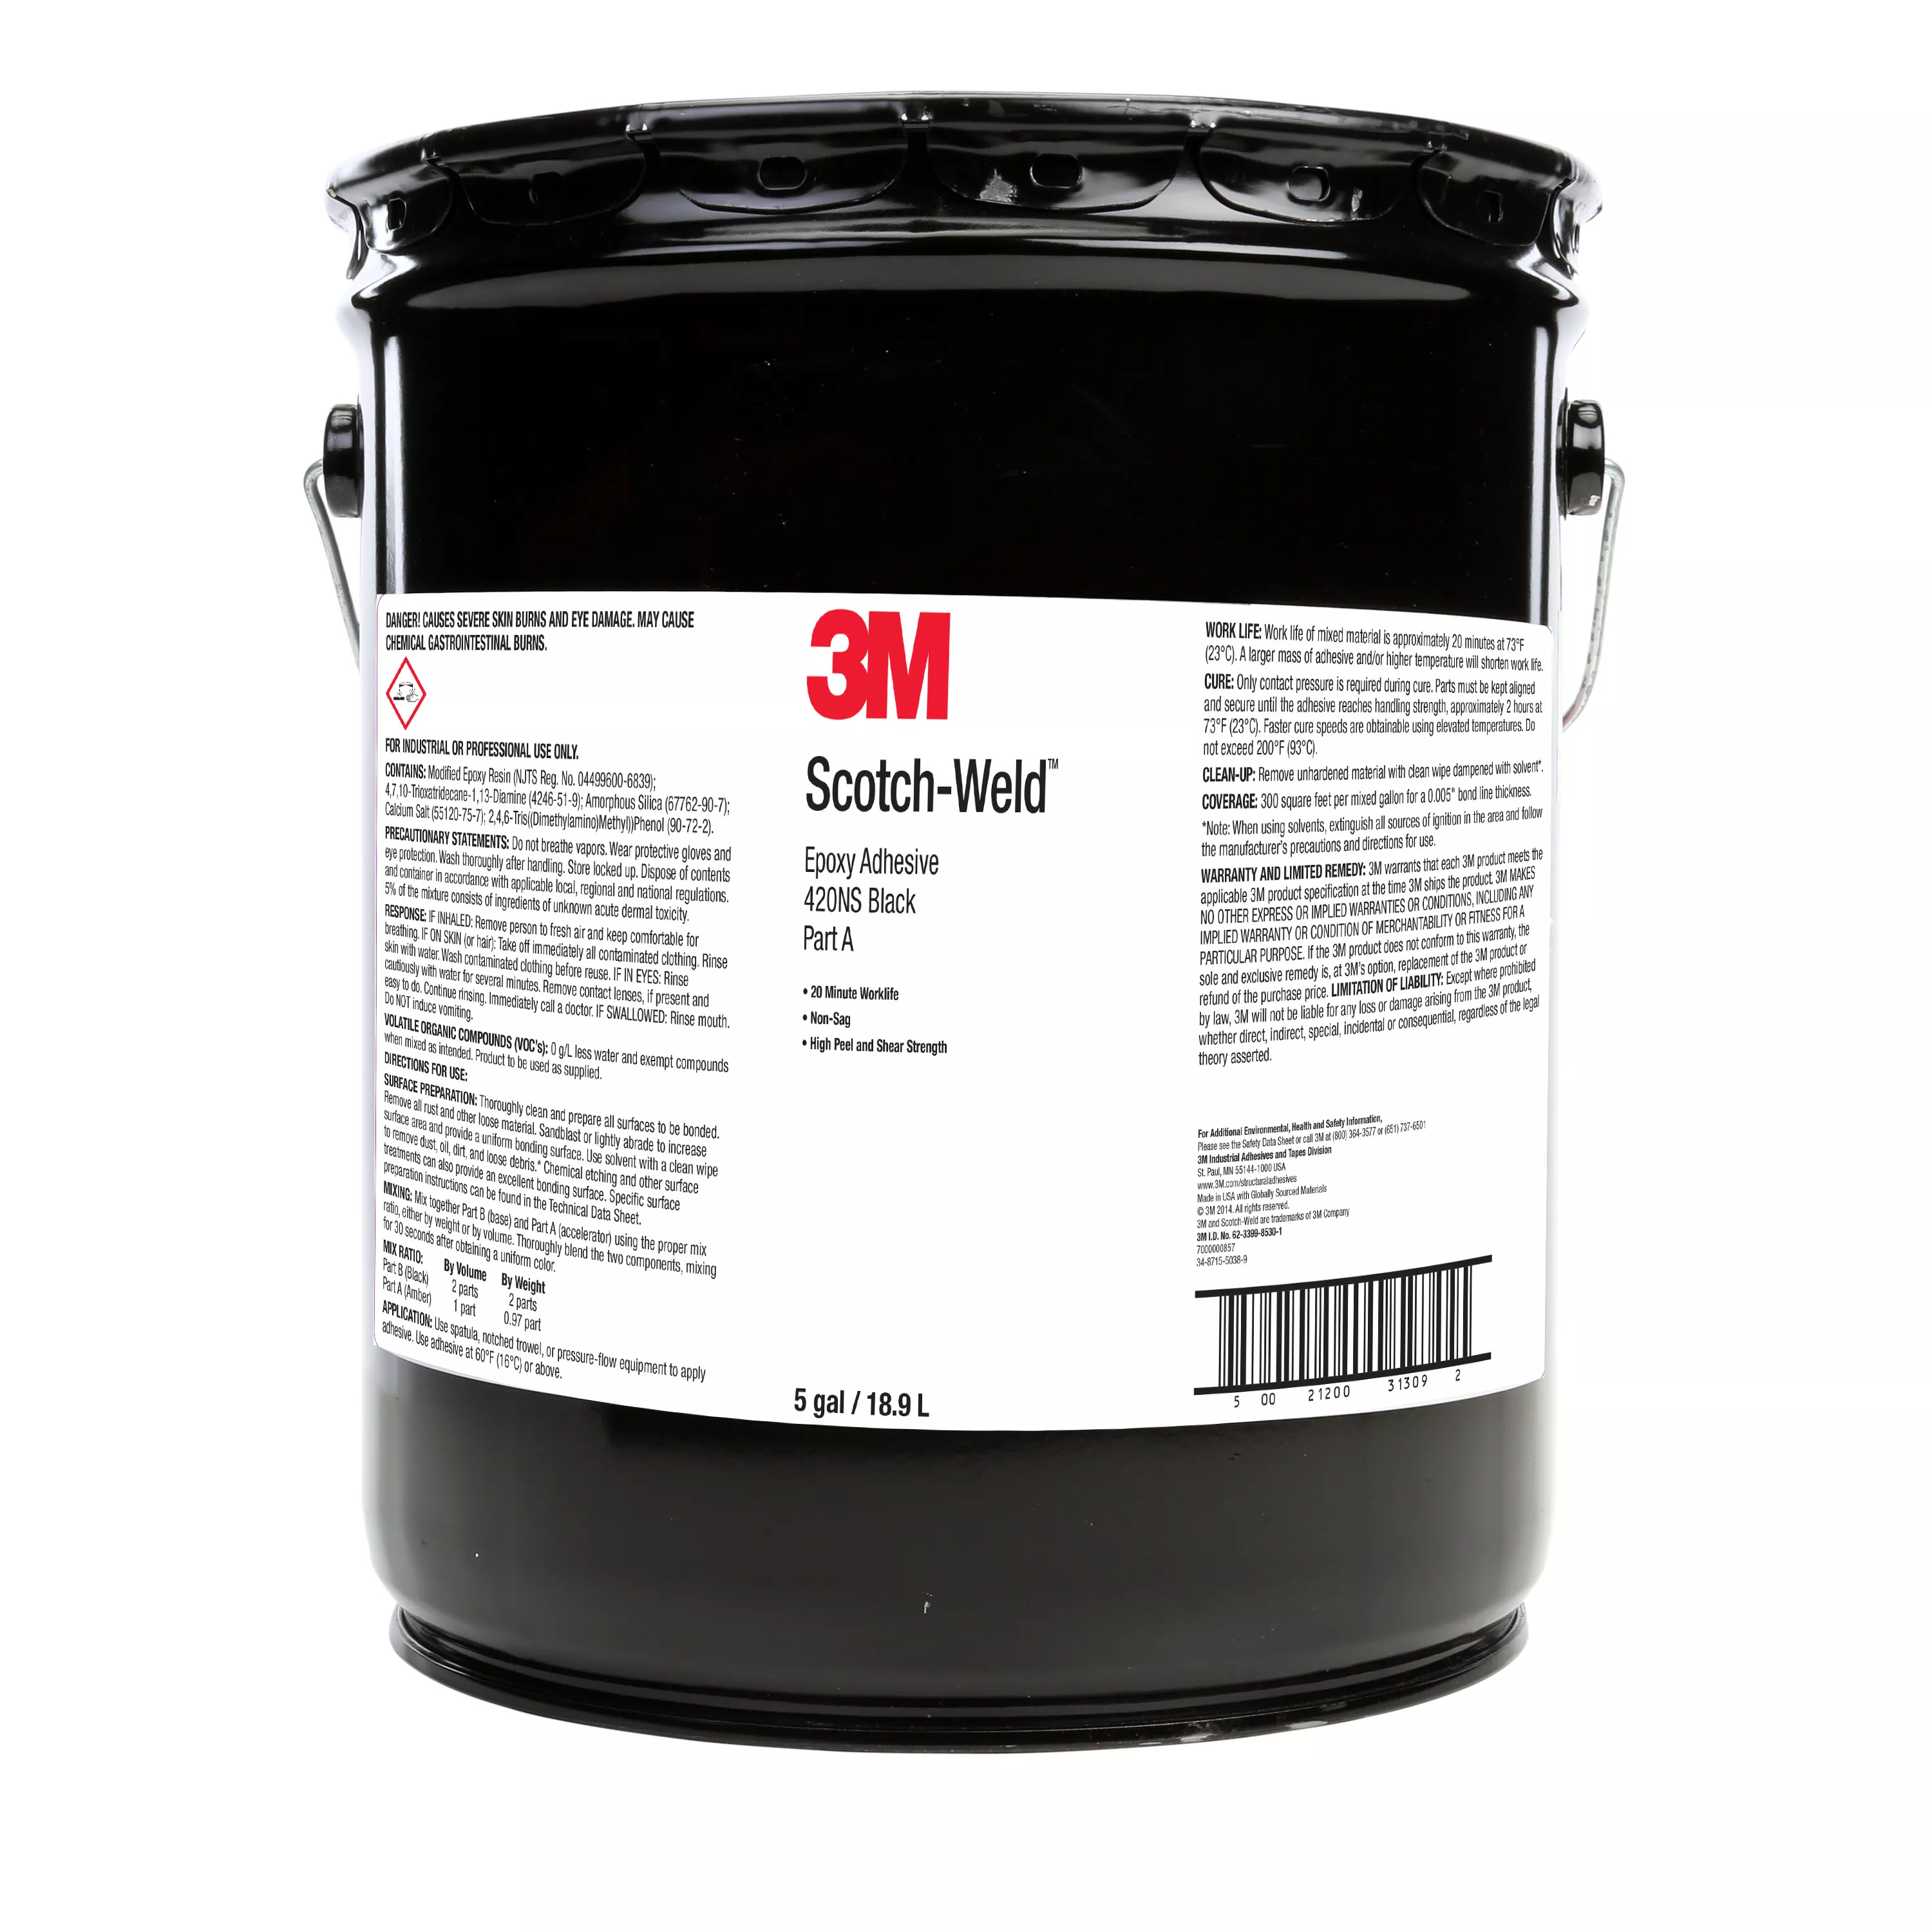 SKU 7000000857 | 3M™ Scotch-Weld™ Epoxy Adhesive 420NS